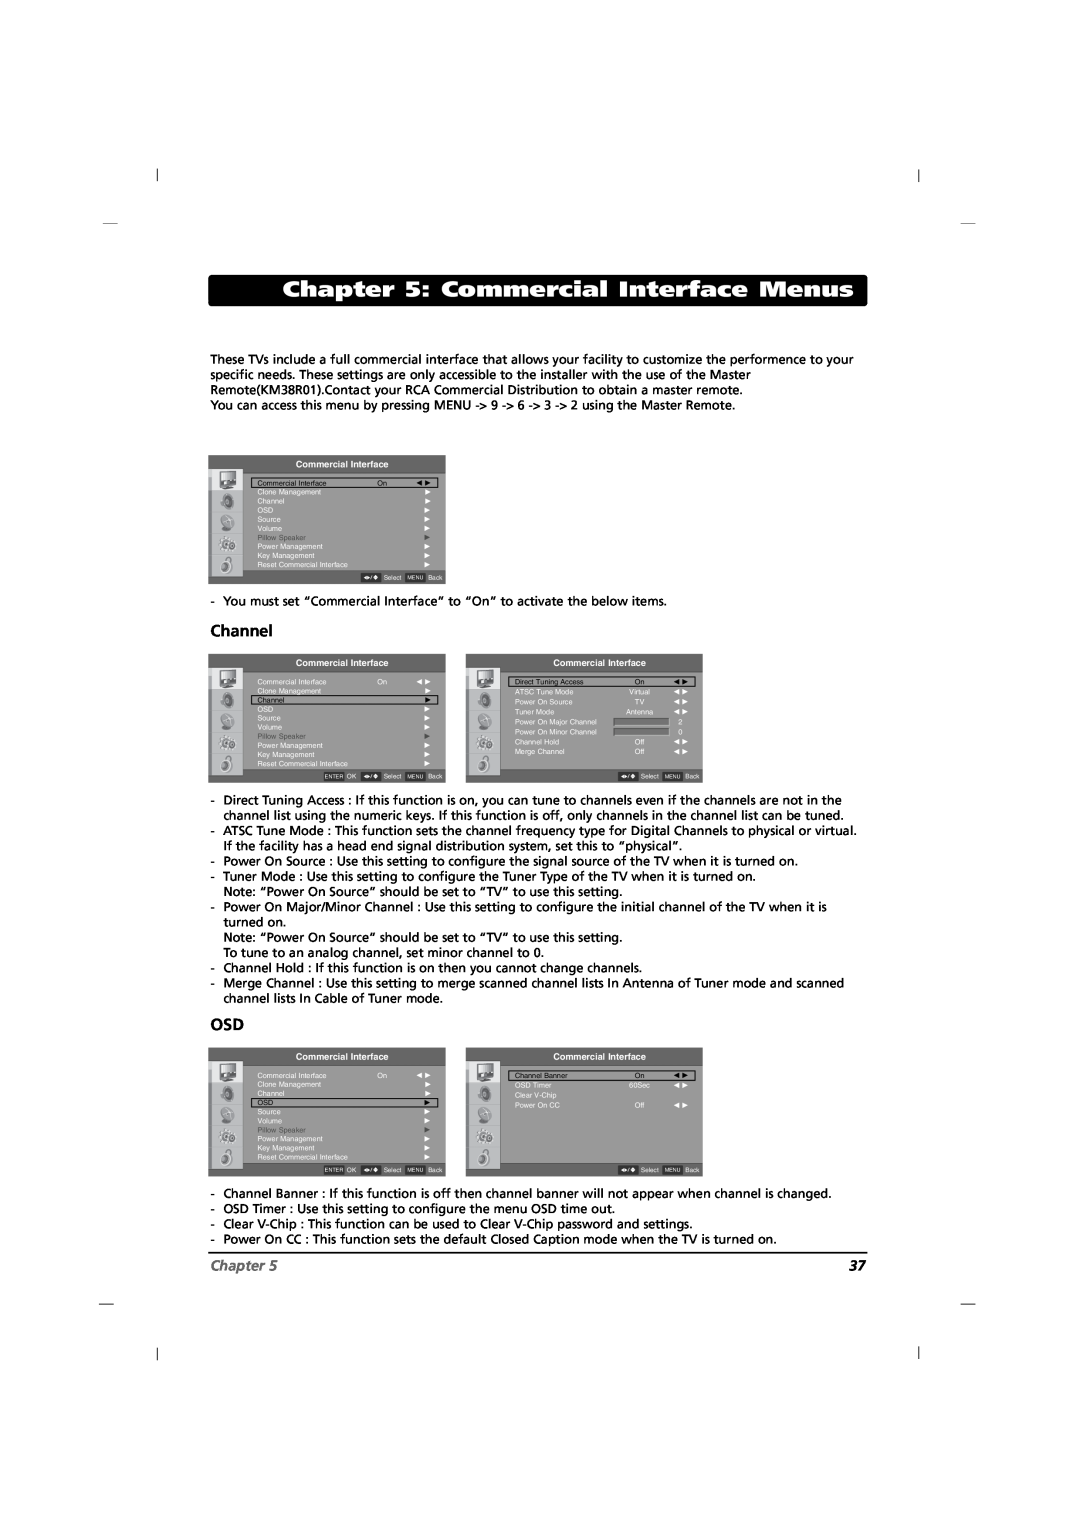 RCA J32CE720, J42CE820, J26CE820 manual Commercial Interface Menus, Channel, Chapter 